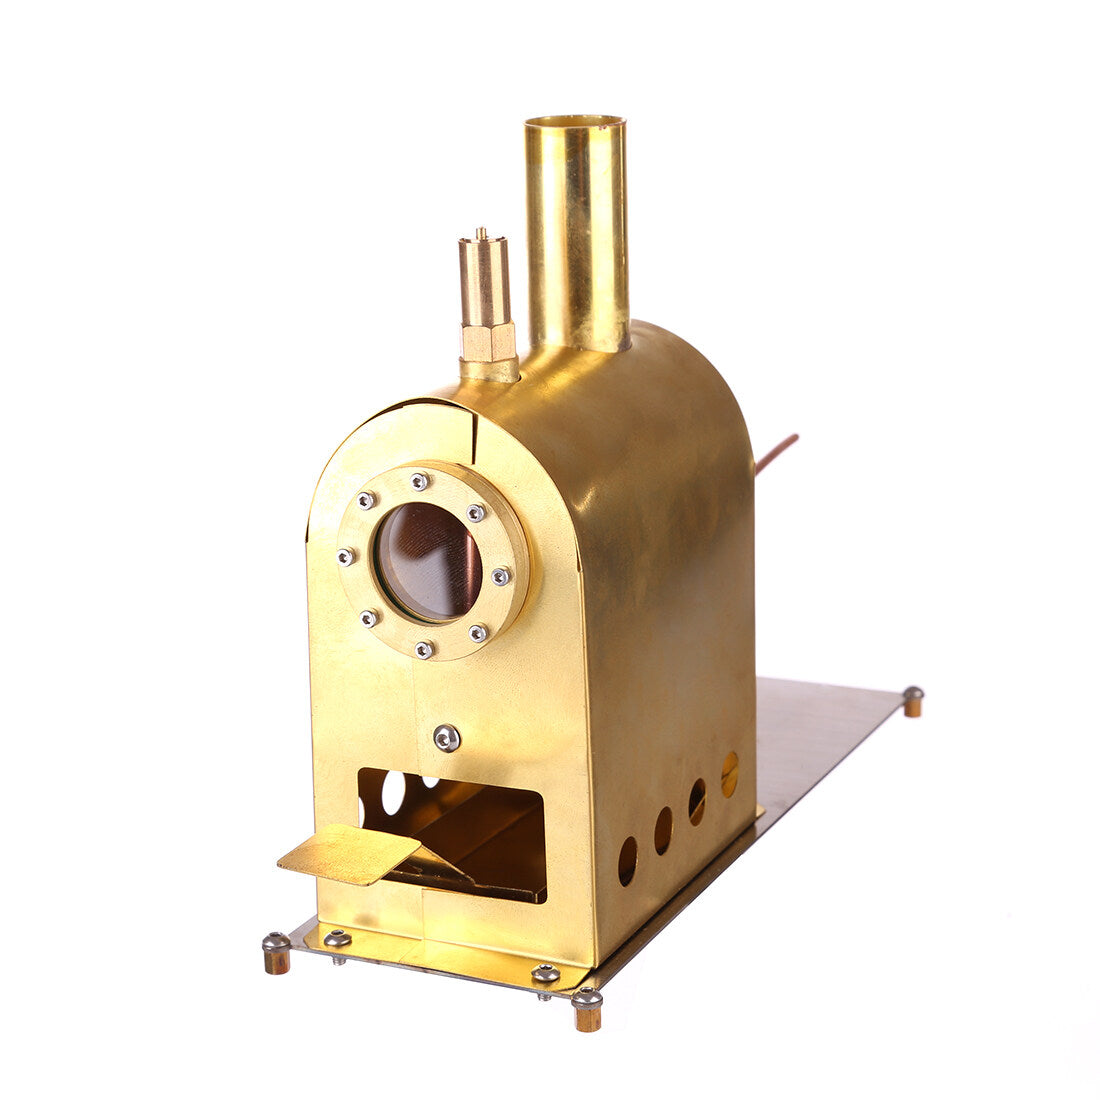 Miniatur-Boiler mit Ausgangswellendurchmesser von 4 mm für Dampfmaschine